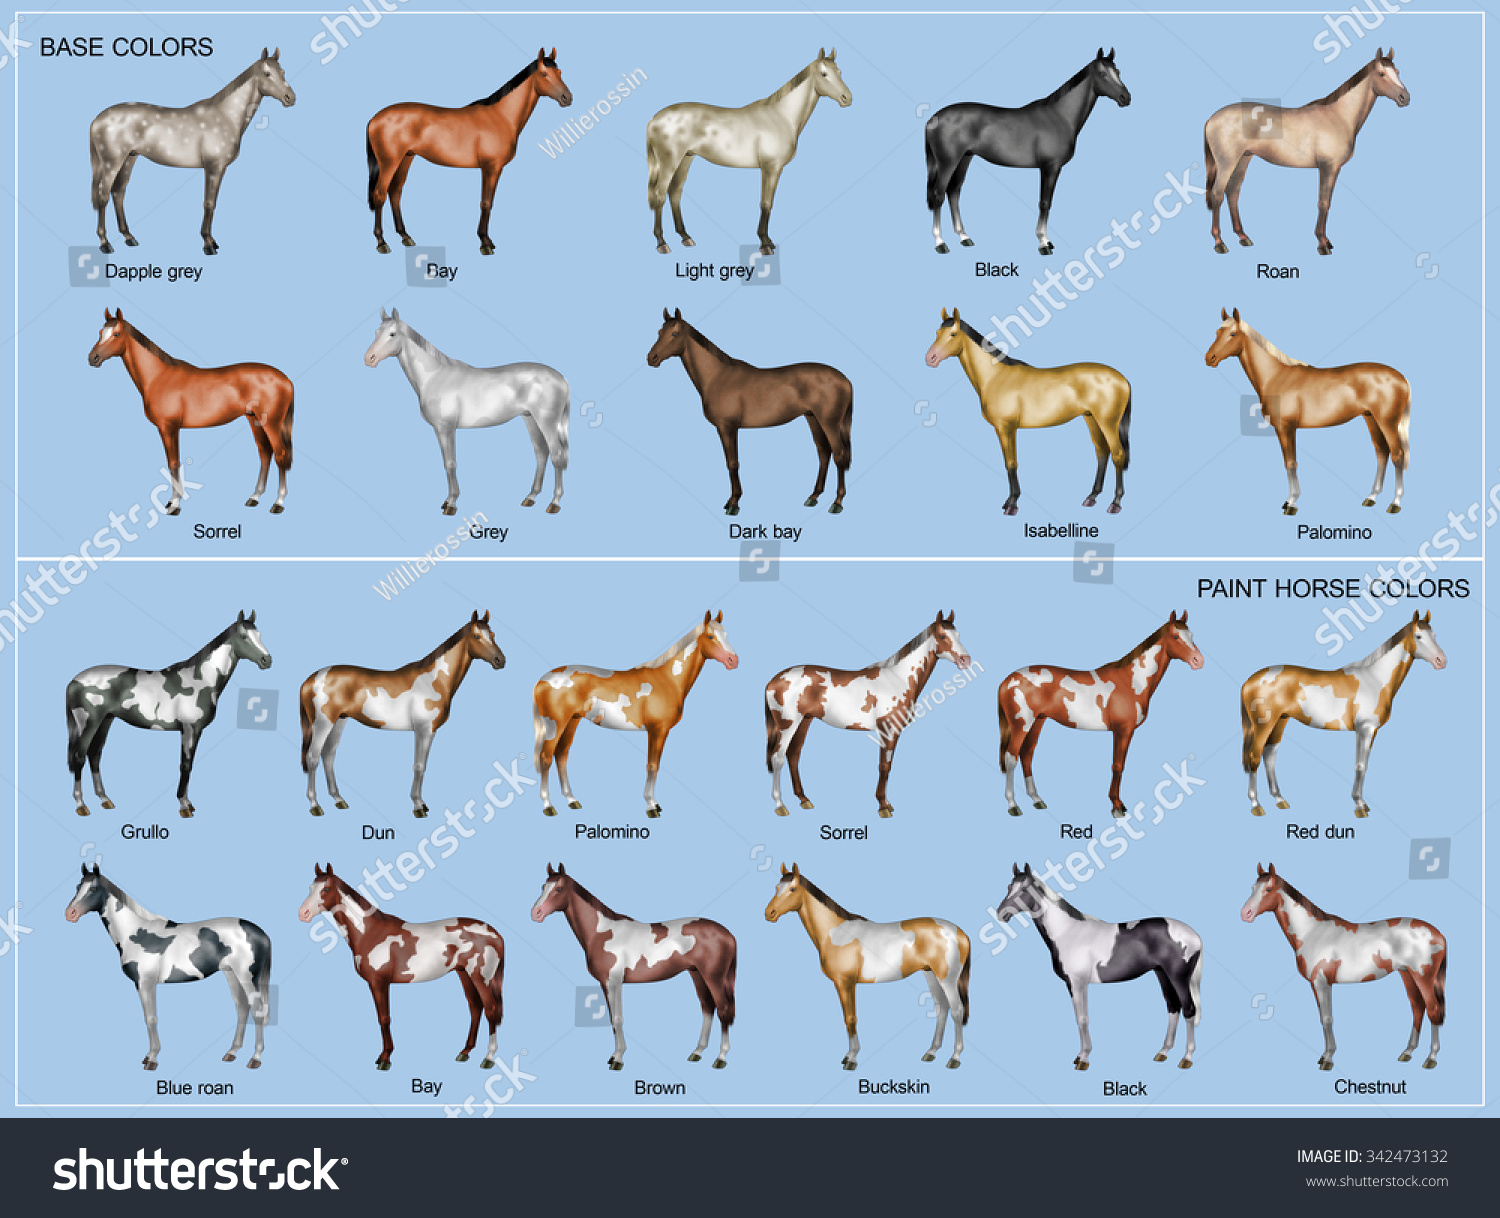 Русские породы лошадей с фотографиями и названиями пород по алфавиту